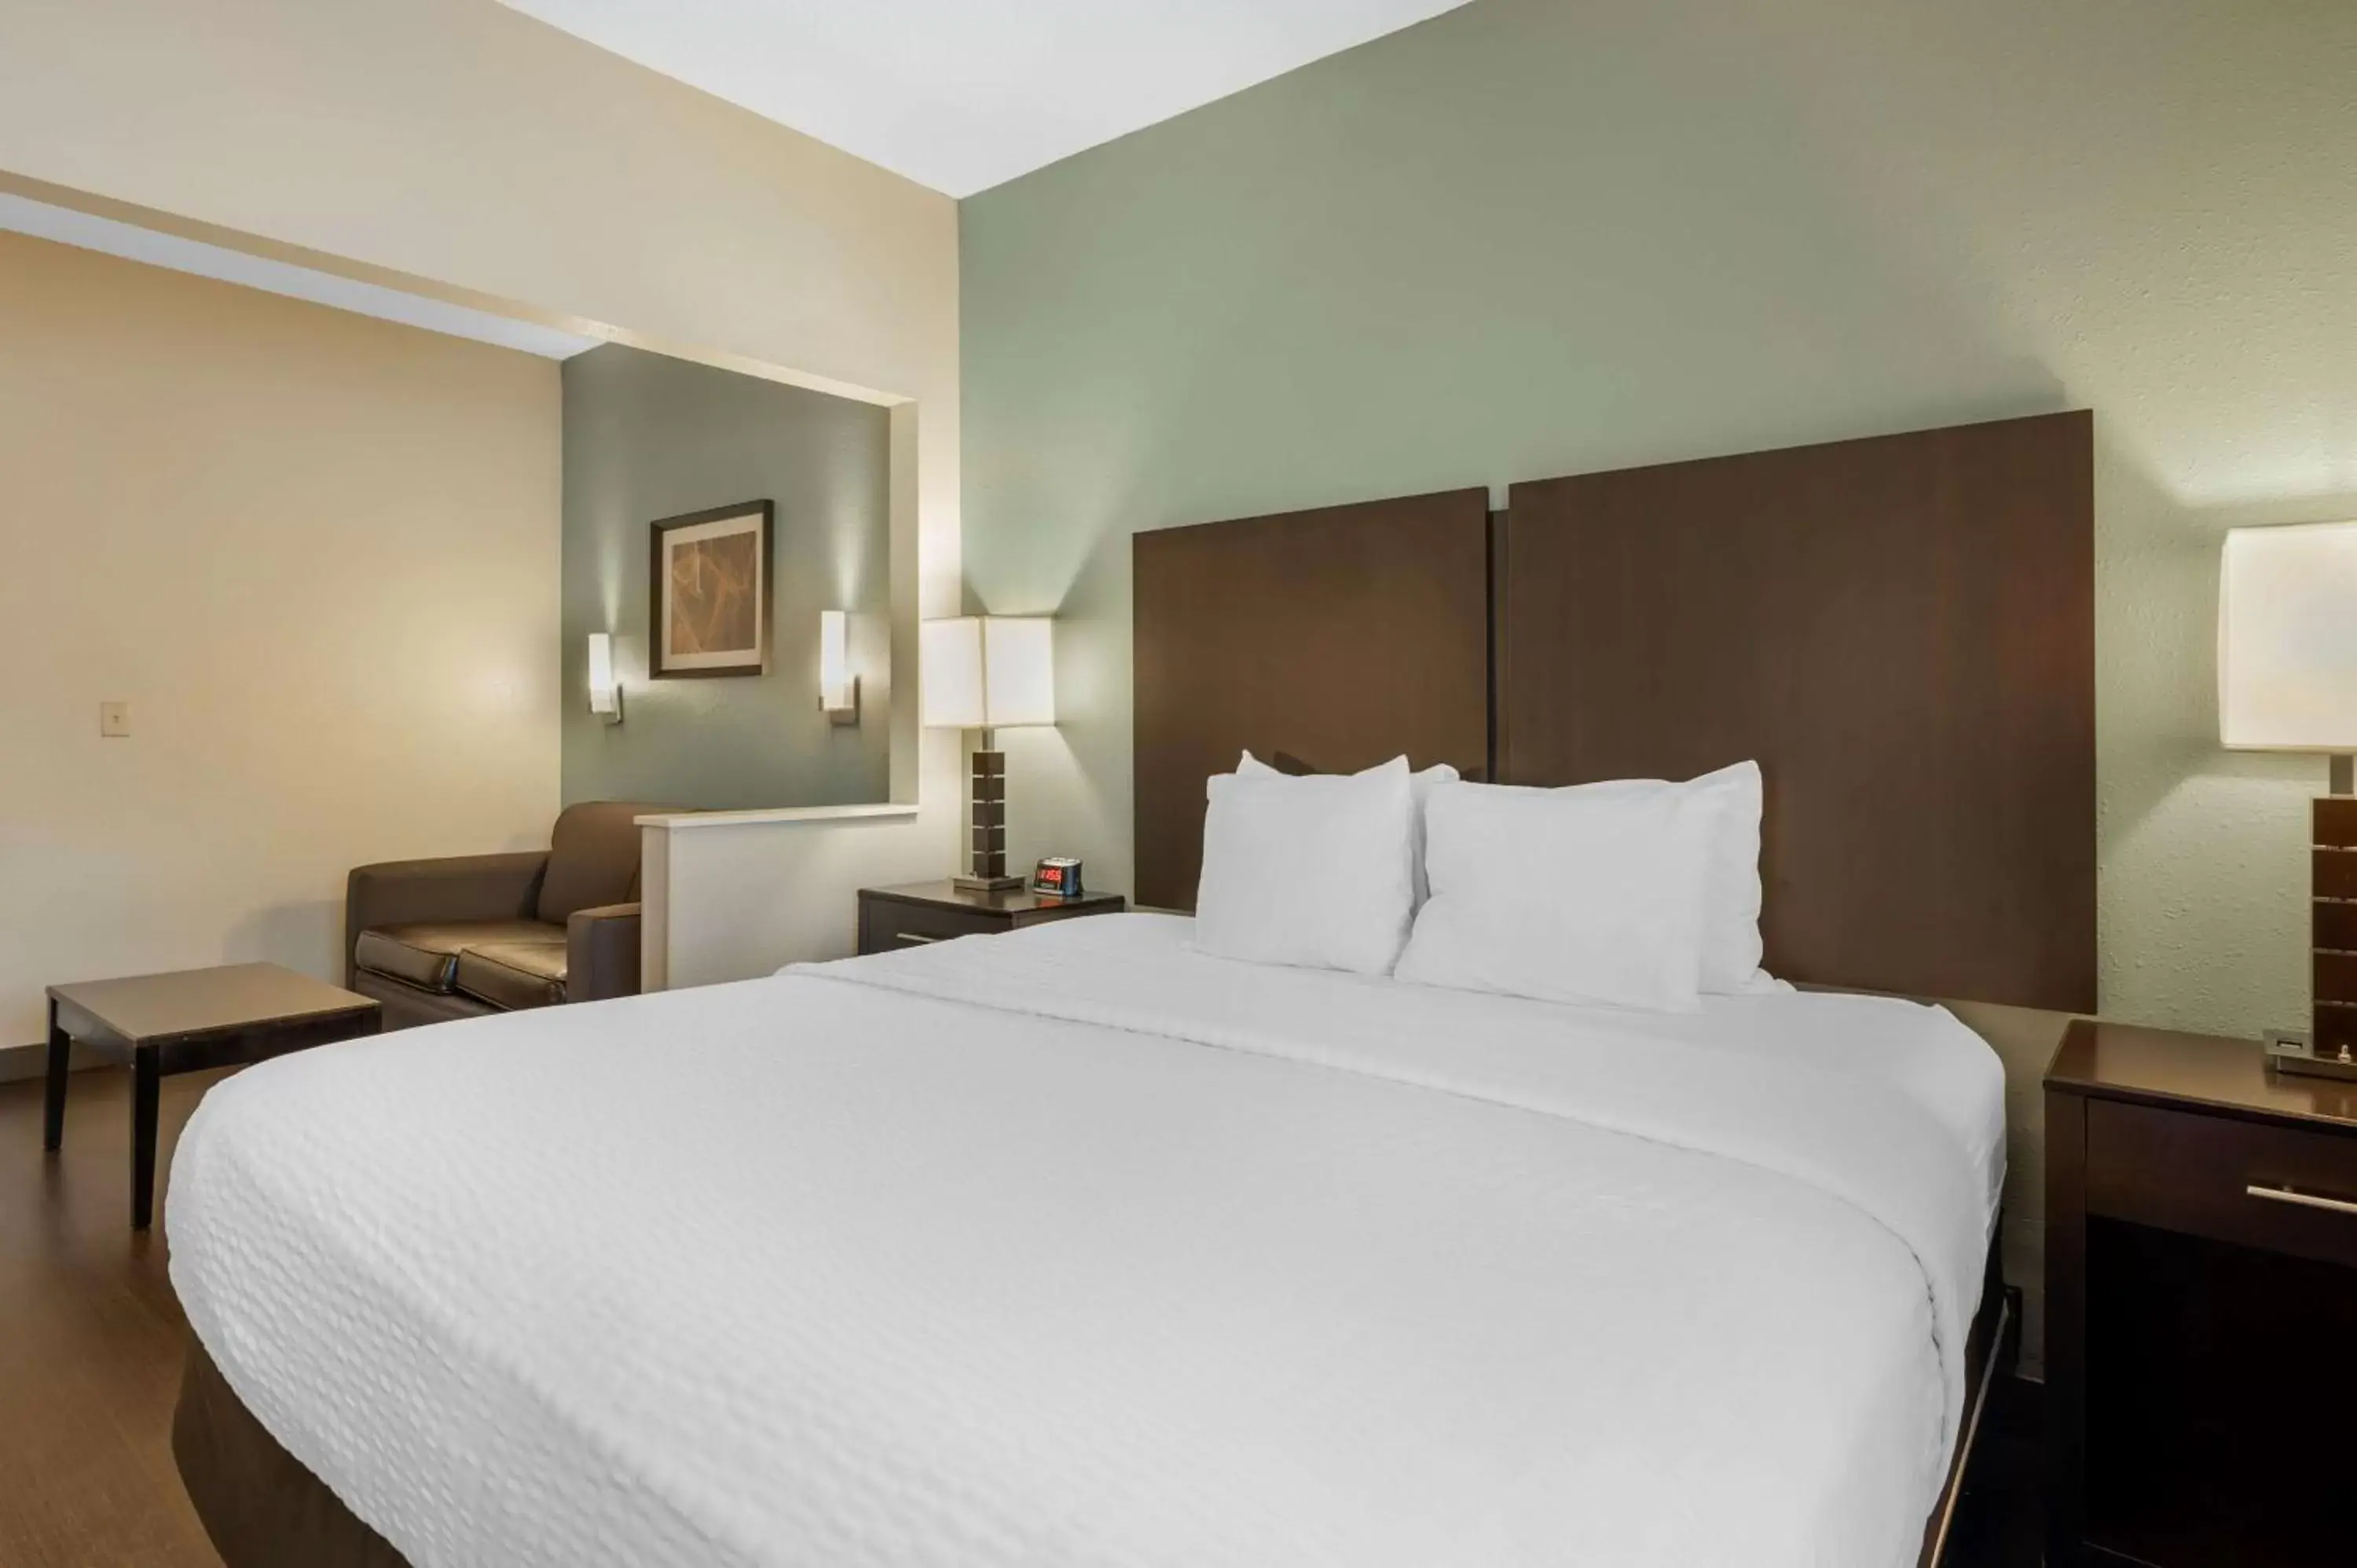 Bedroom, Bed in Best Western Hilliard Inn & Suites